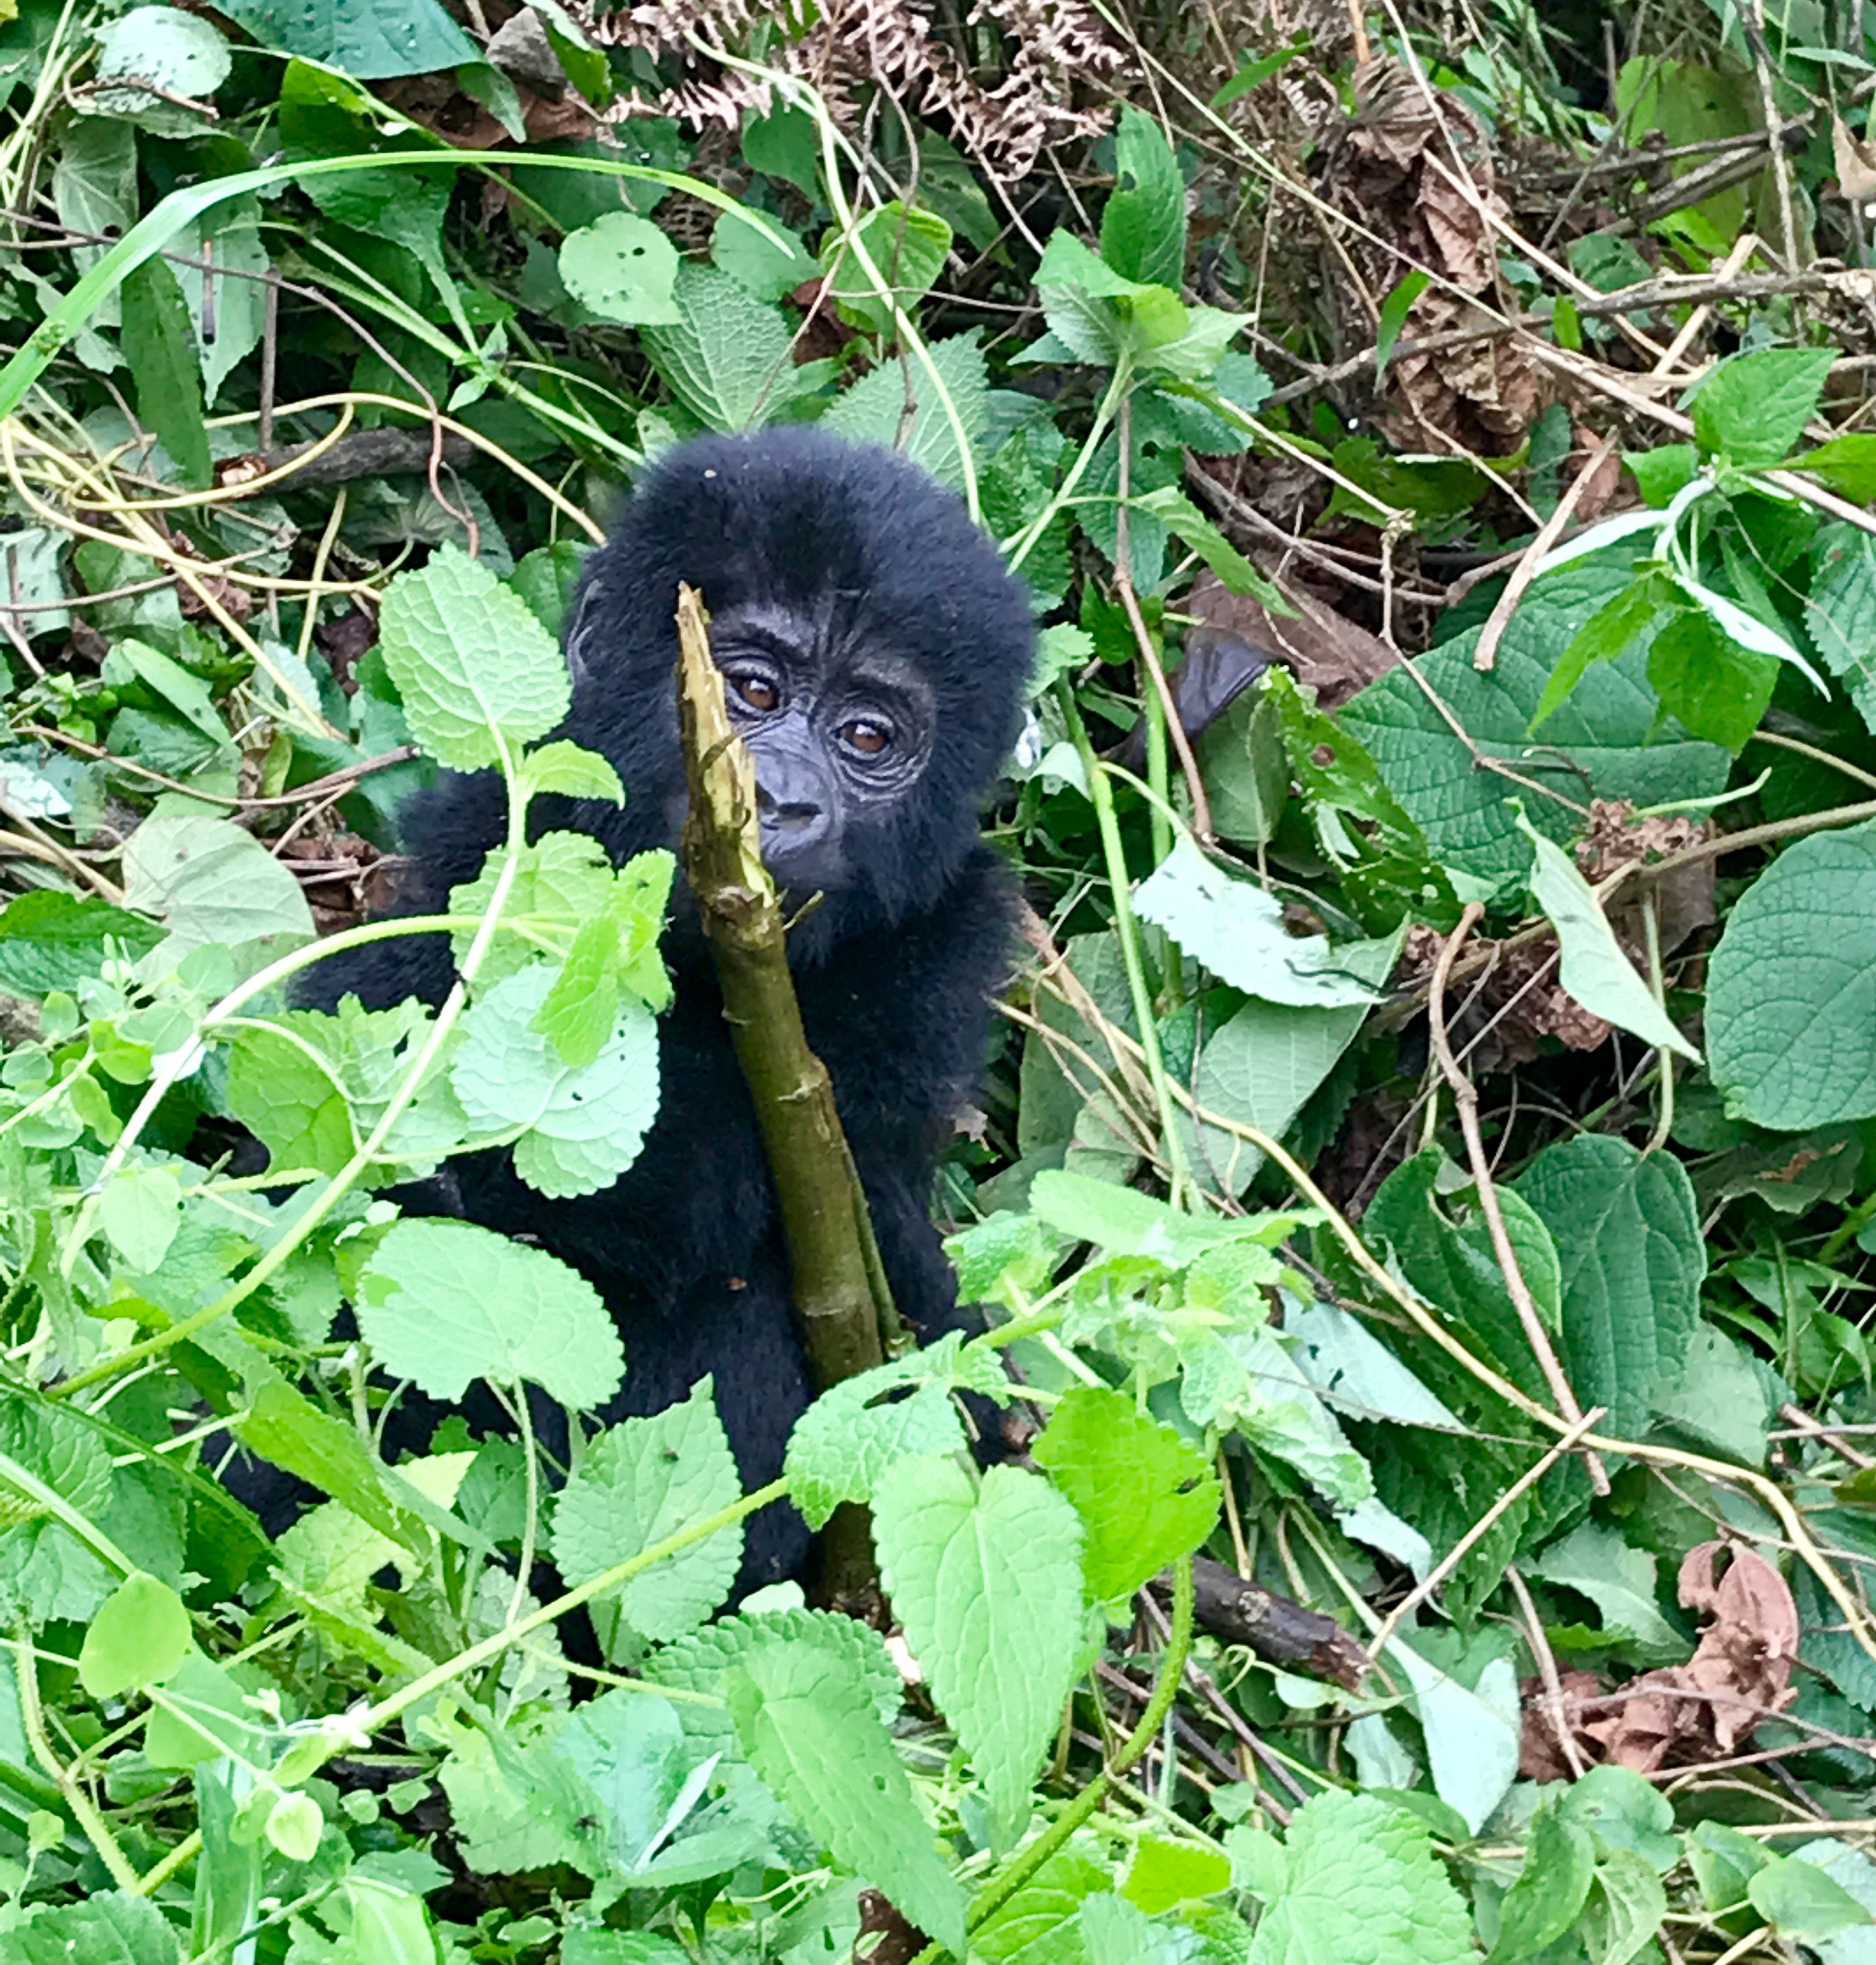 Finalmente fui a caminar por gorila en Uganda y valió la pena la espera - 435